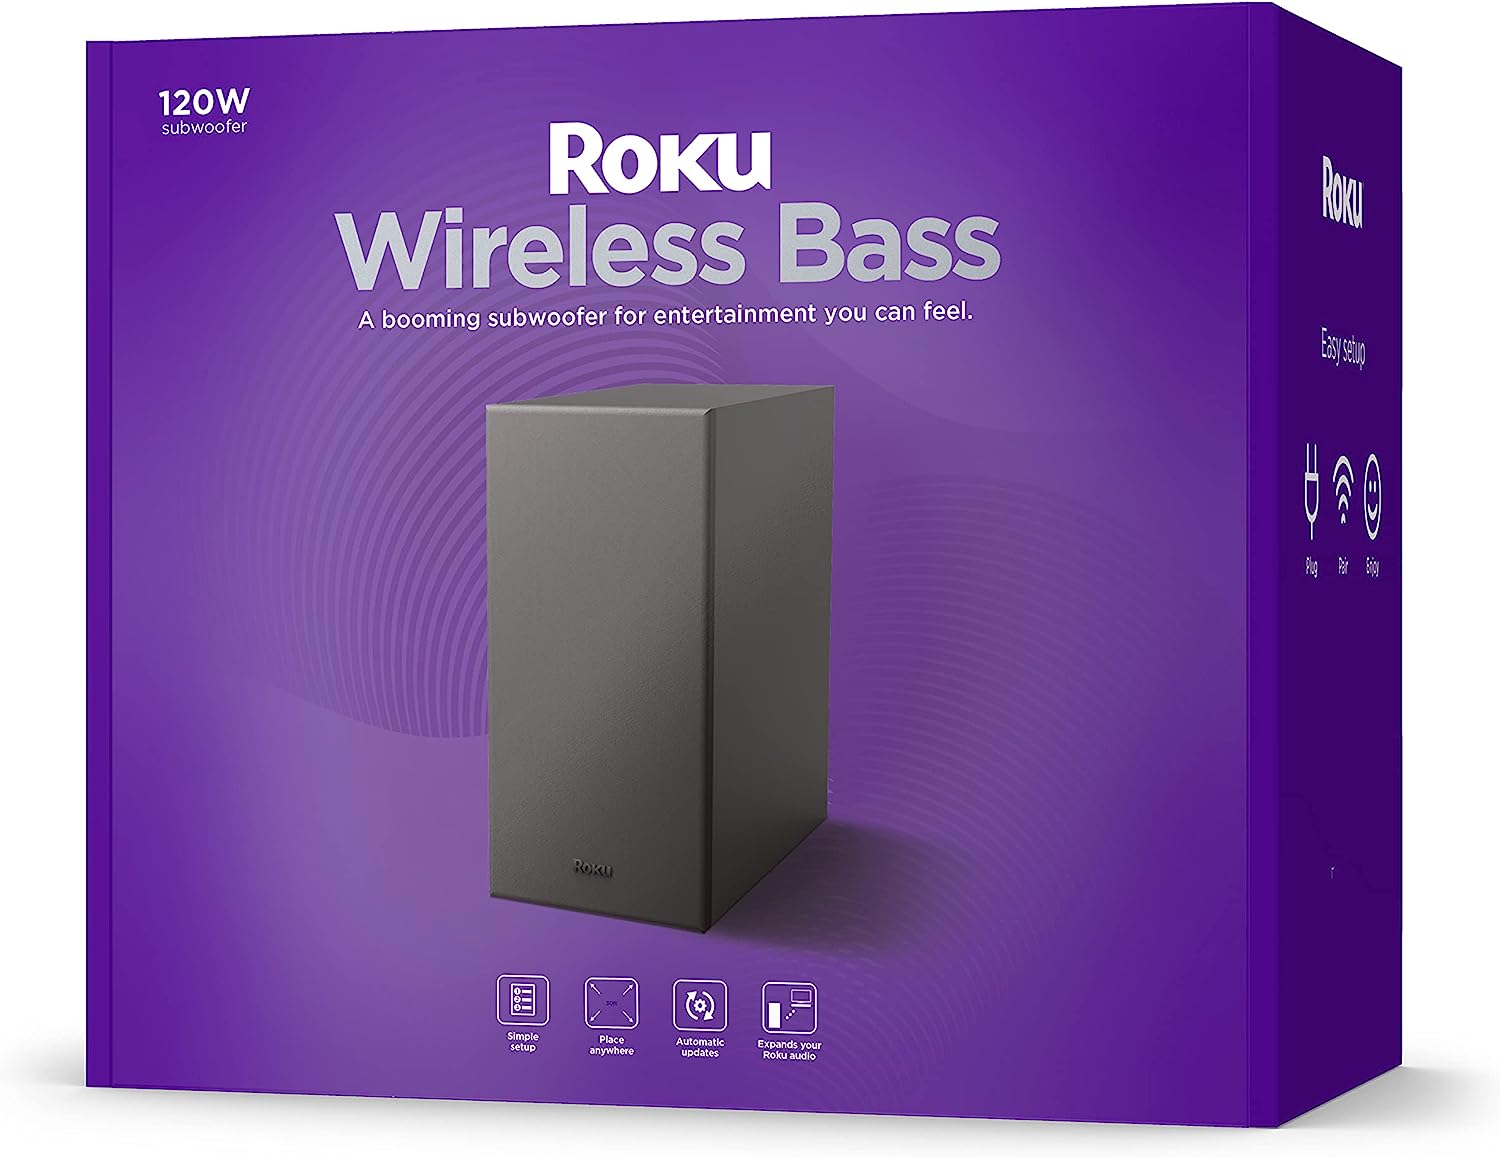 Roku Wireless Bass Review